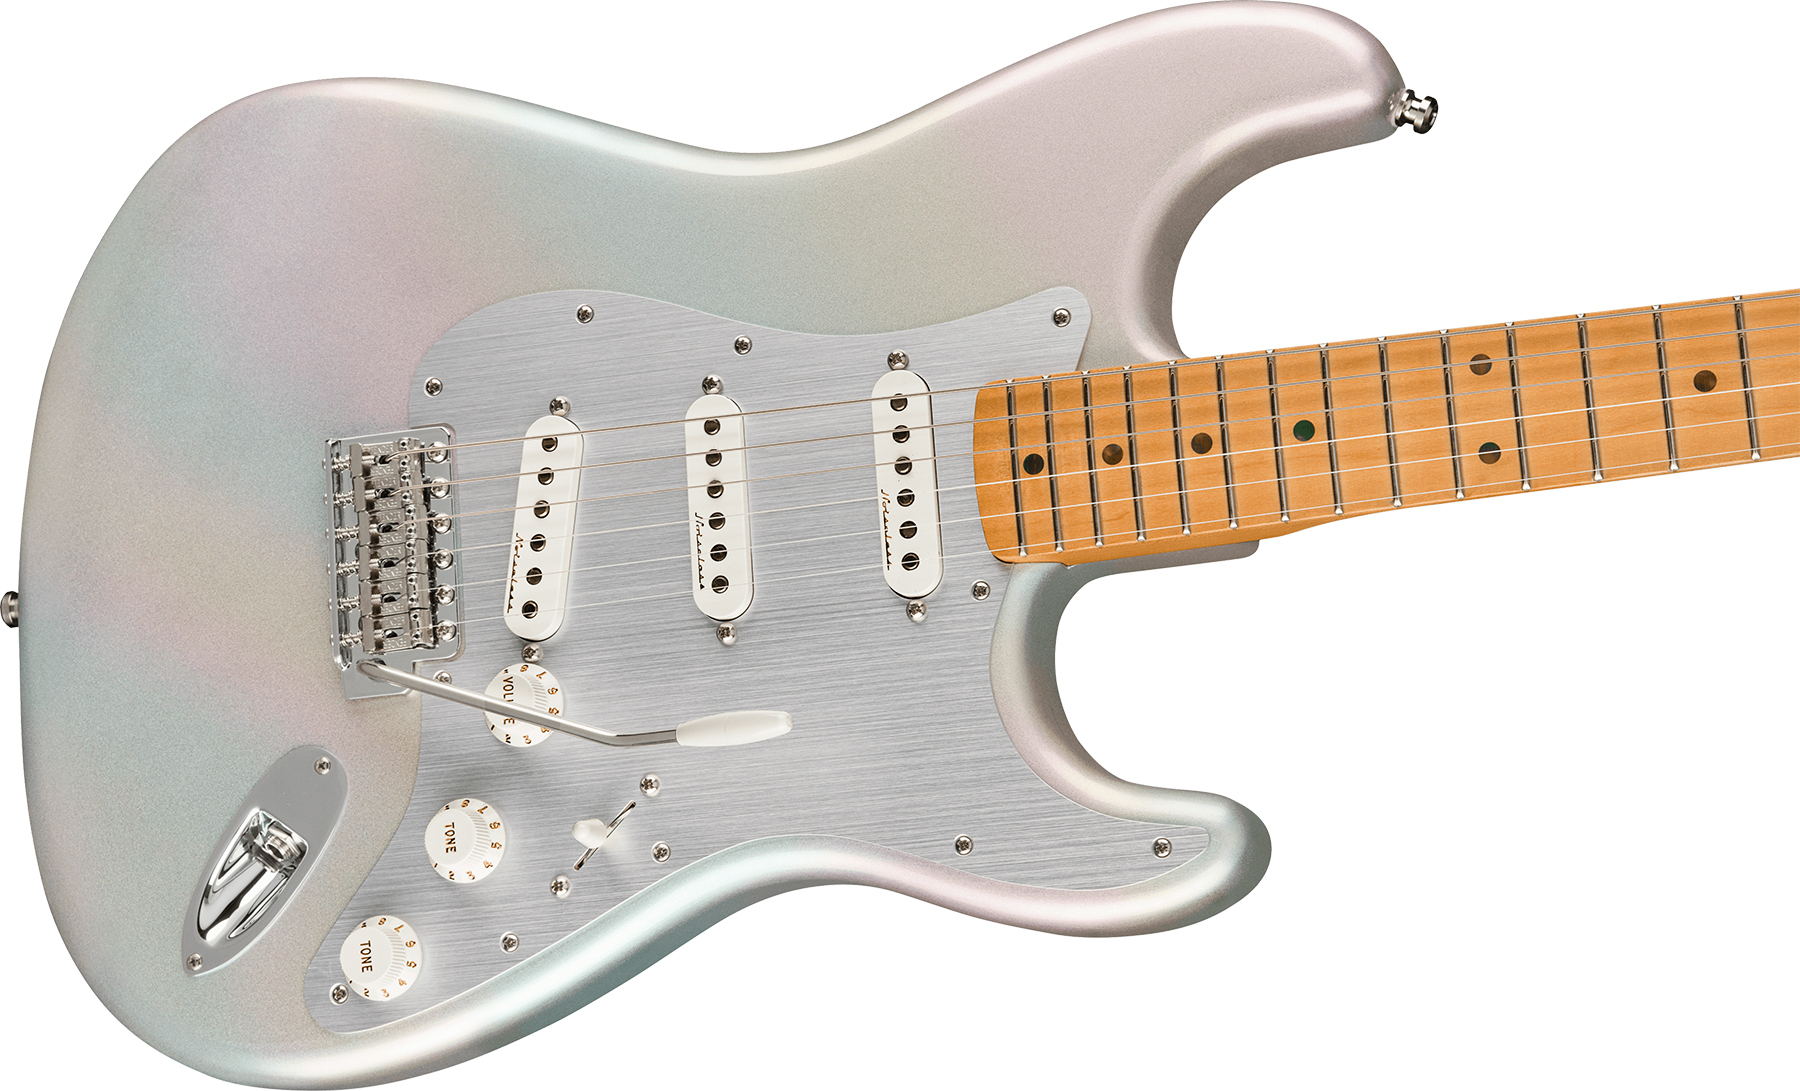 Fender H.e.r. Strat Signature Mex 3s Trem Mn - Chrome Glow - Elektrische gitaar in Str-vorm - Variation 2